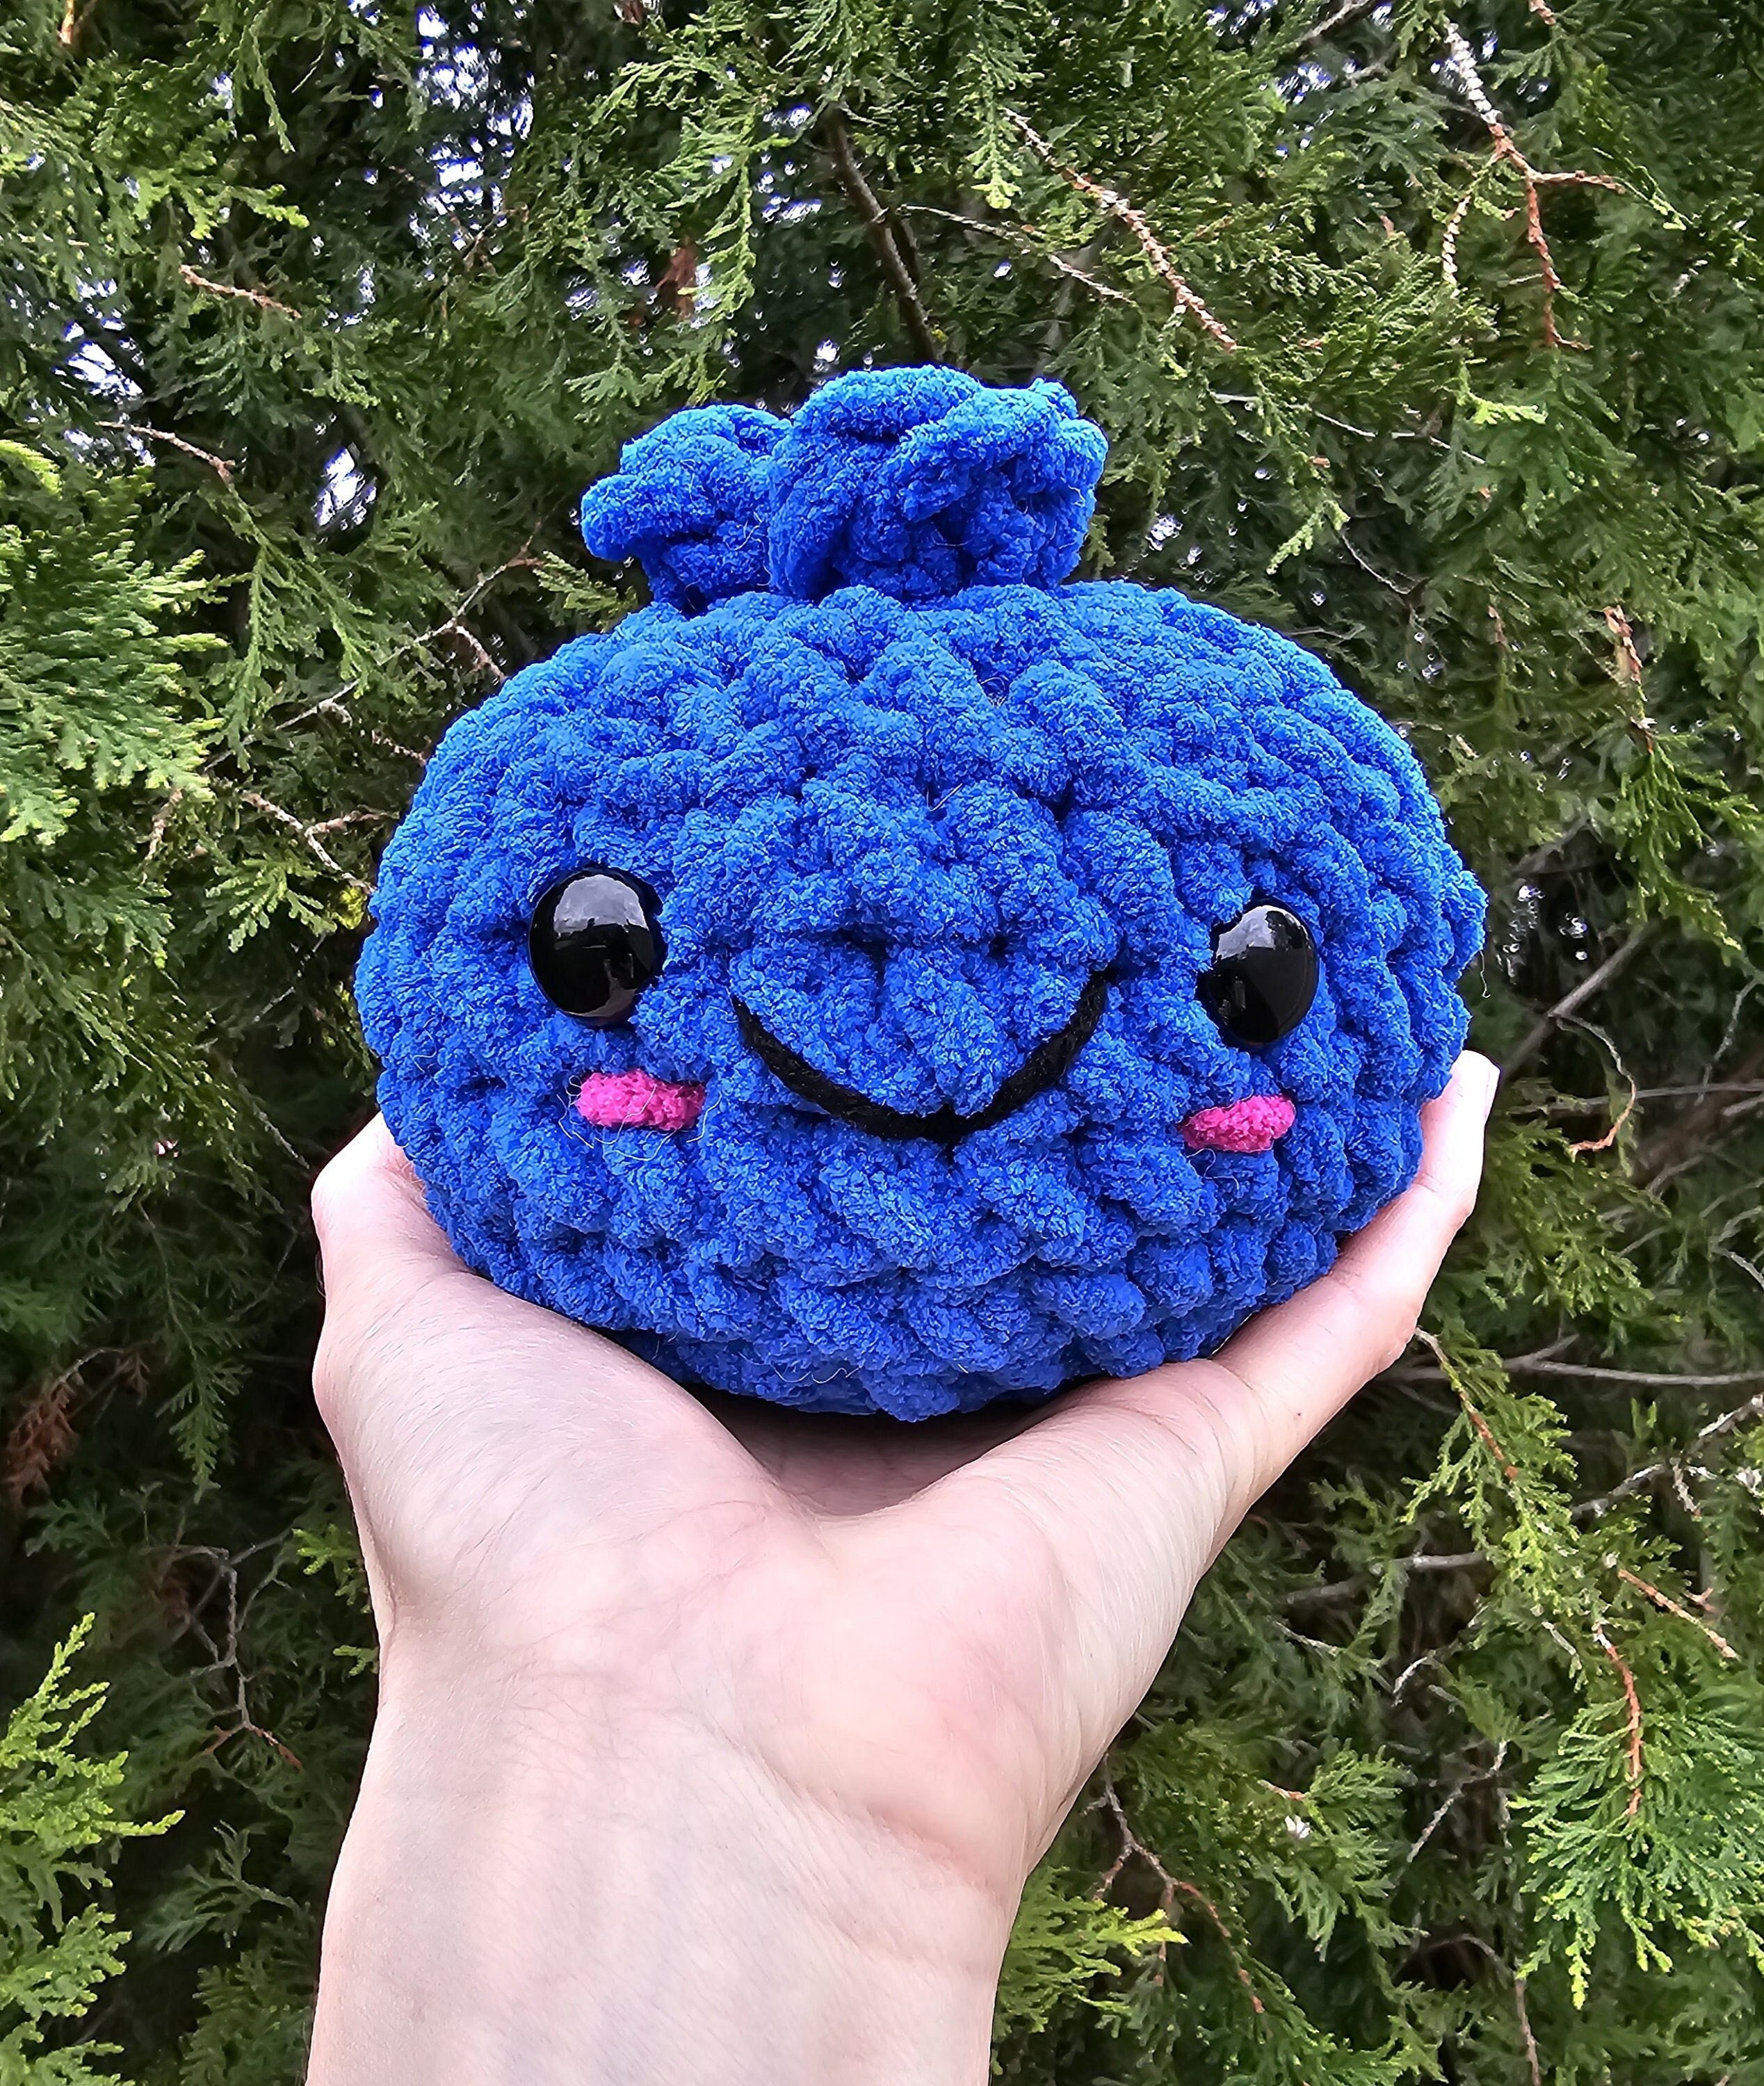 Crochet Blueberry Pattern Easy Beginner Crochet Plushie Kawaii